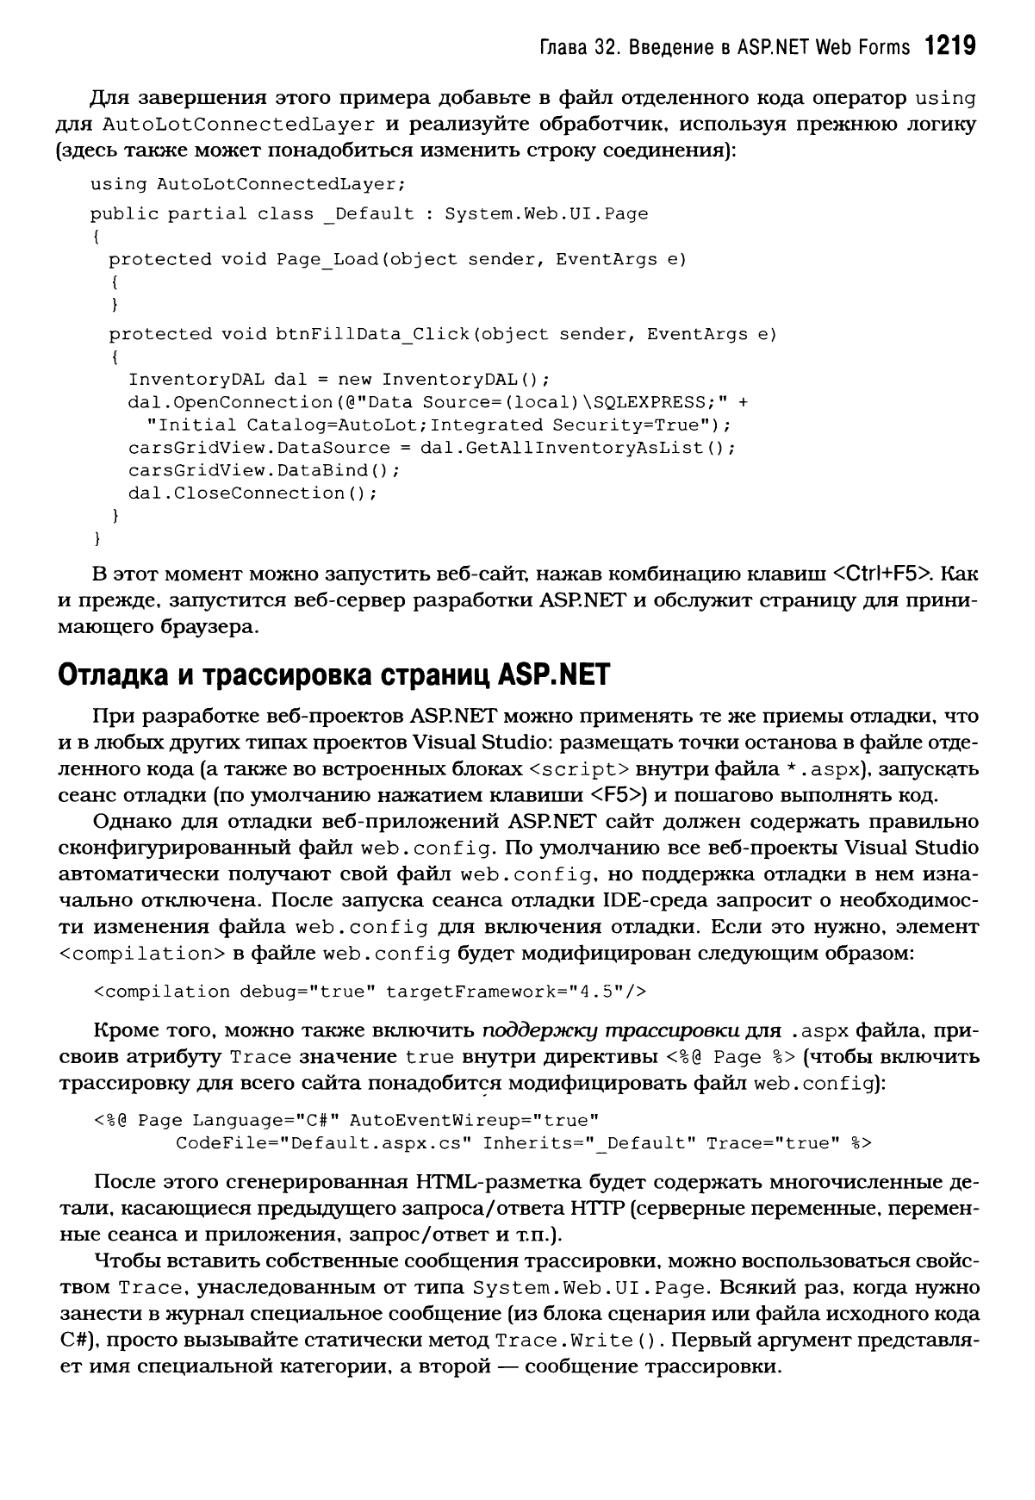 Отладка и трассировка страниц ASP.NET